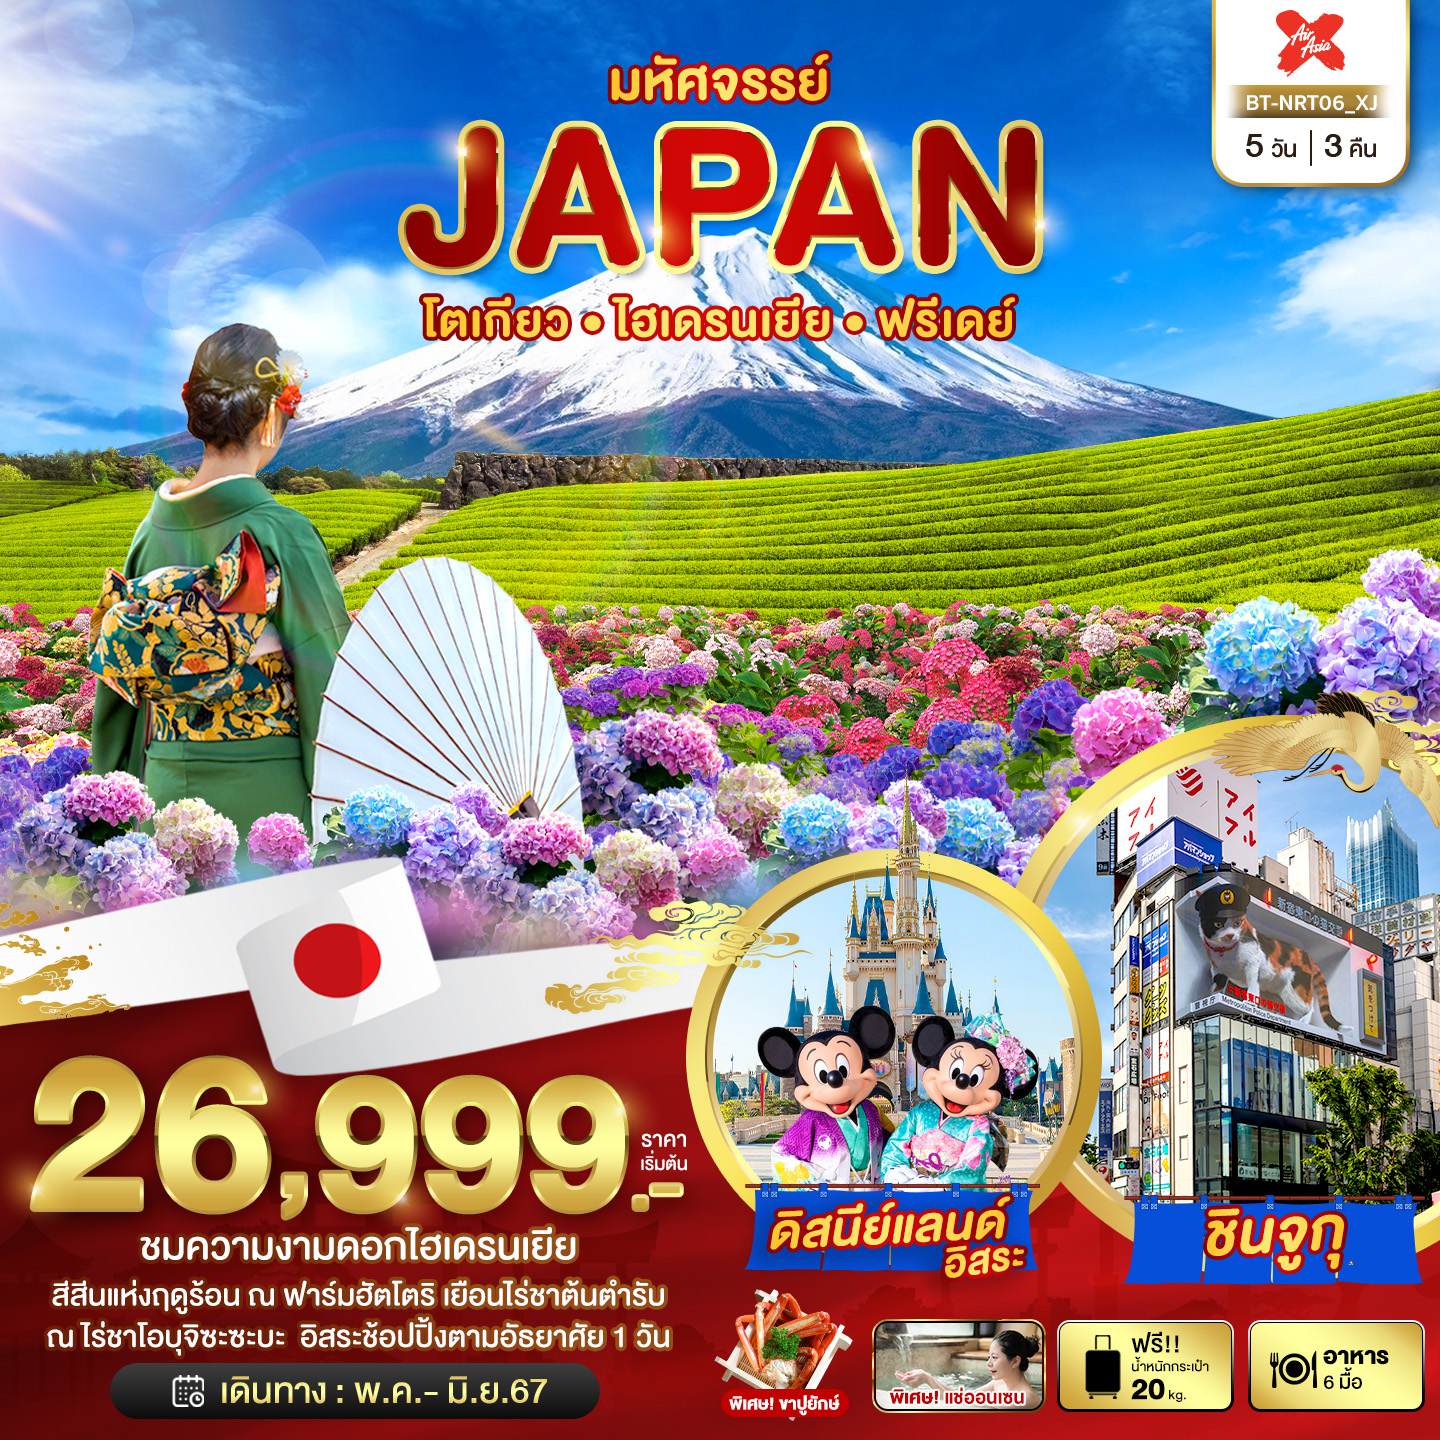 ทัวร์ญี่ปุ่น มหัศจรรย์ JAPAN โตเกียว ไฮเดรนเยีย ฟรีเดย์ 5วัน 3คืน (XJ)